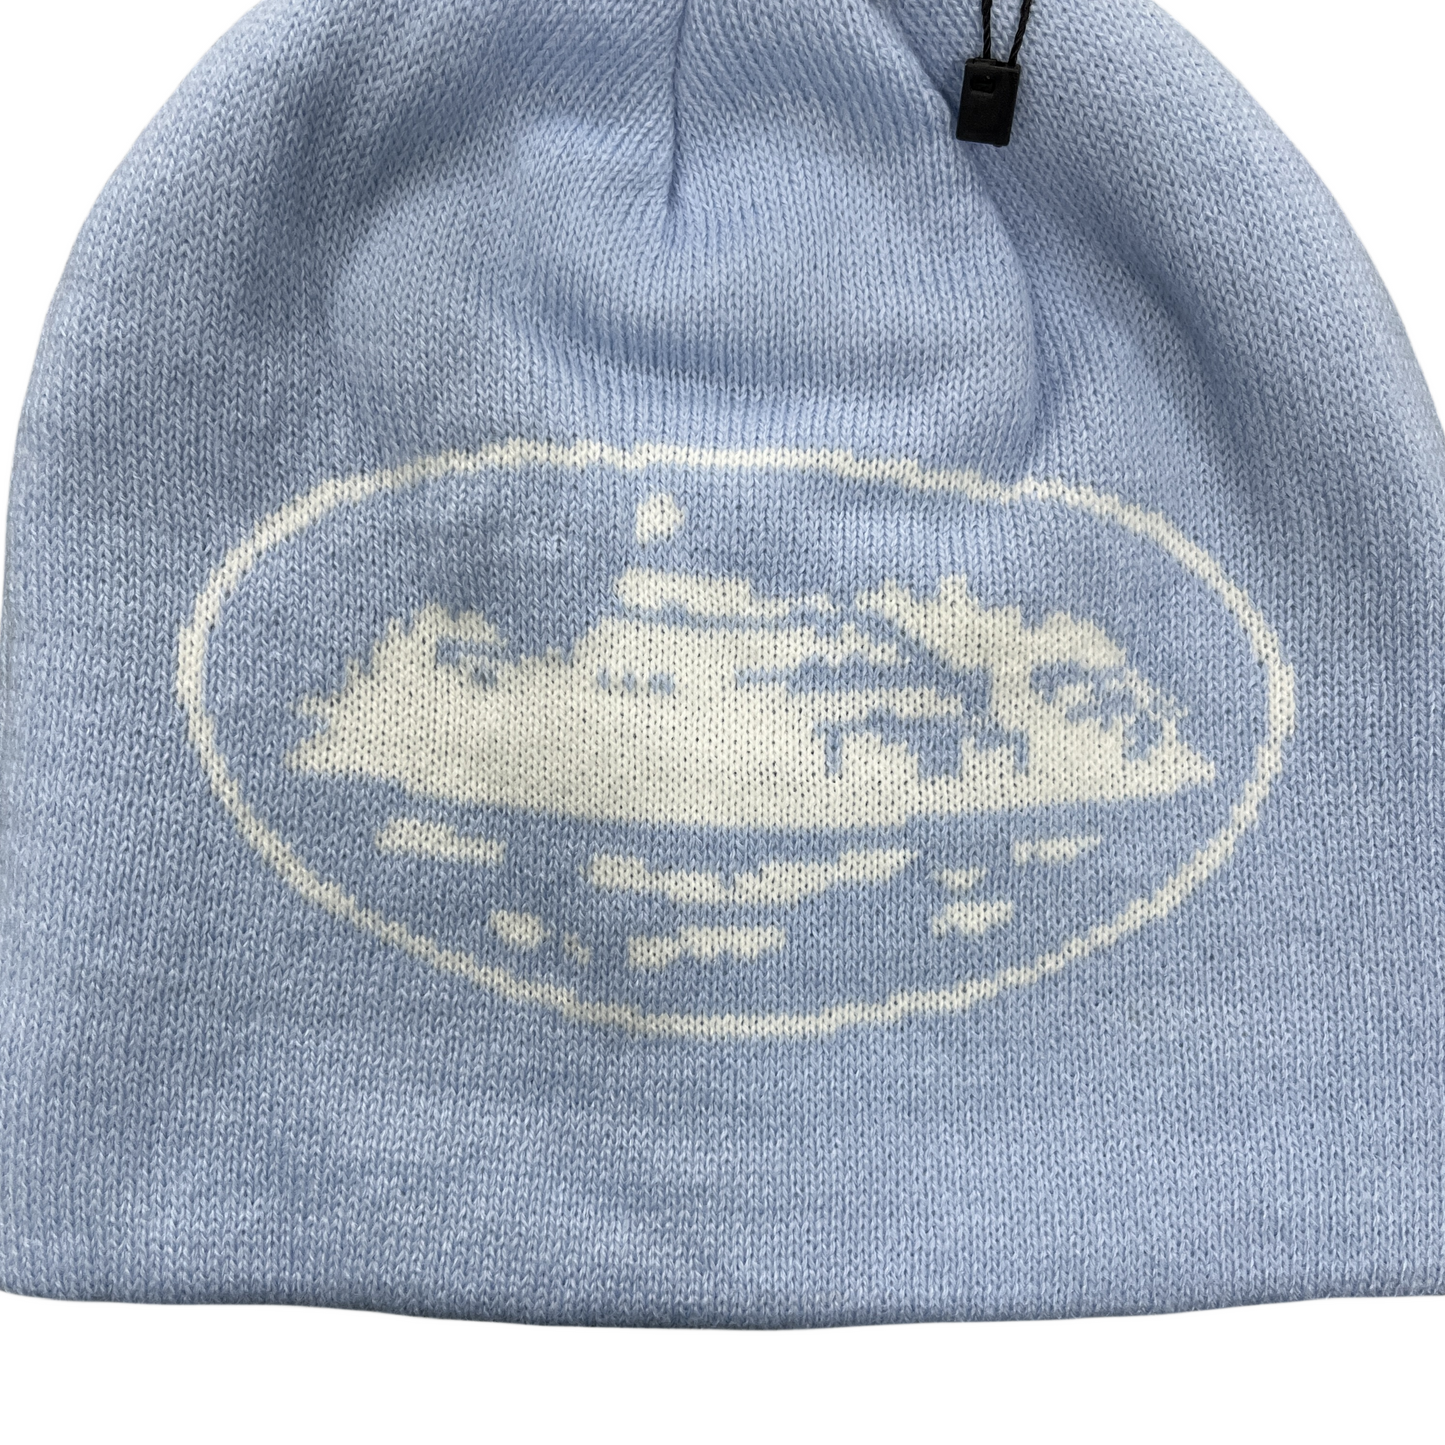 Corteiz Alcatraz Beanie Knitting Warm Cap Demon Cold Hat - Baby blue